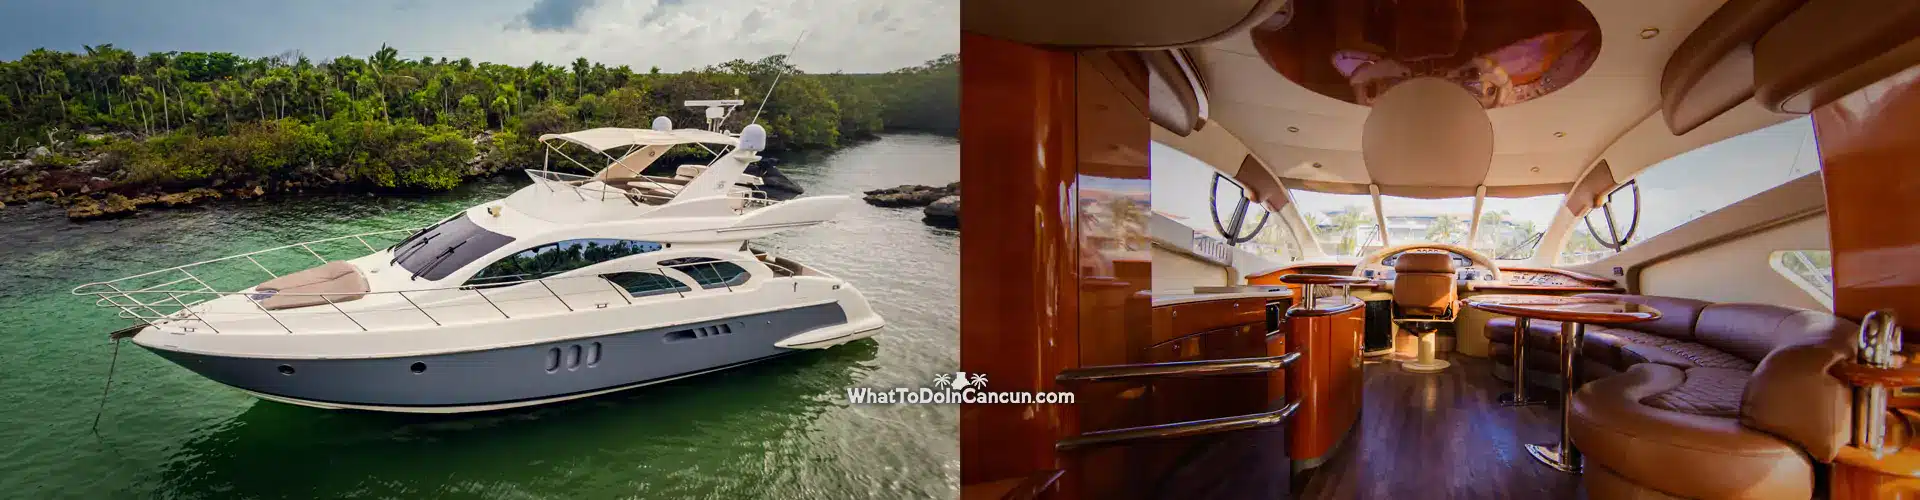 cancun-yacht-charter